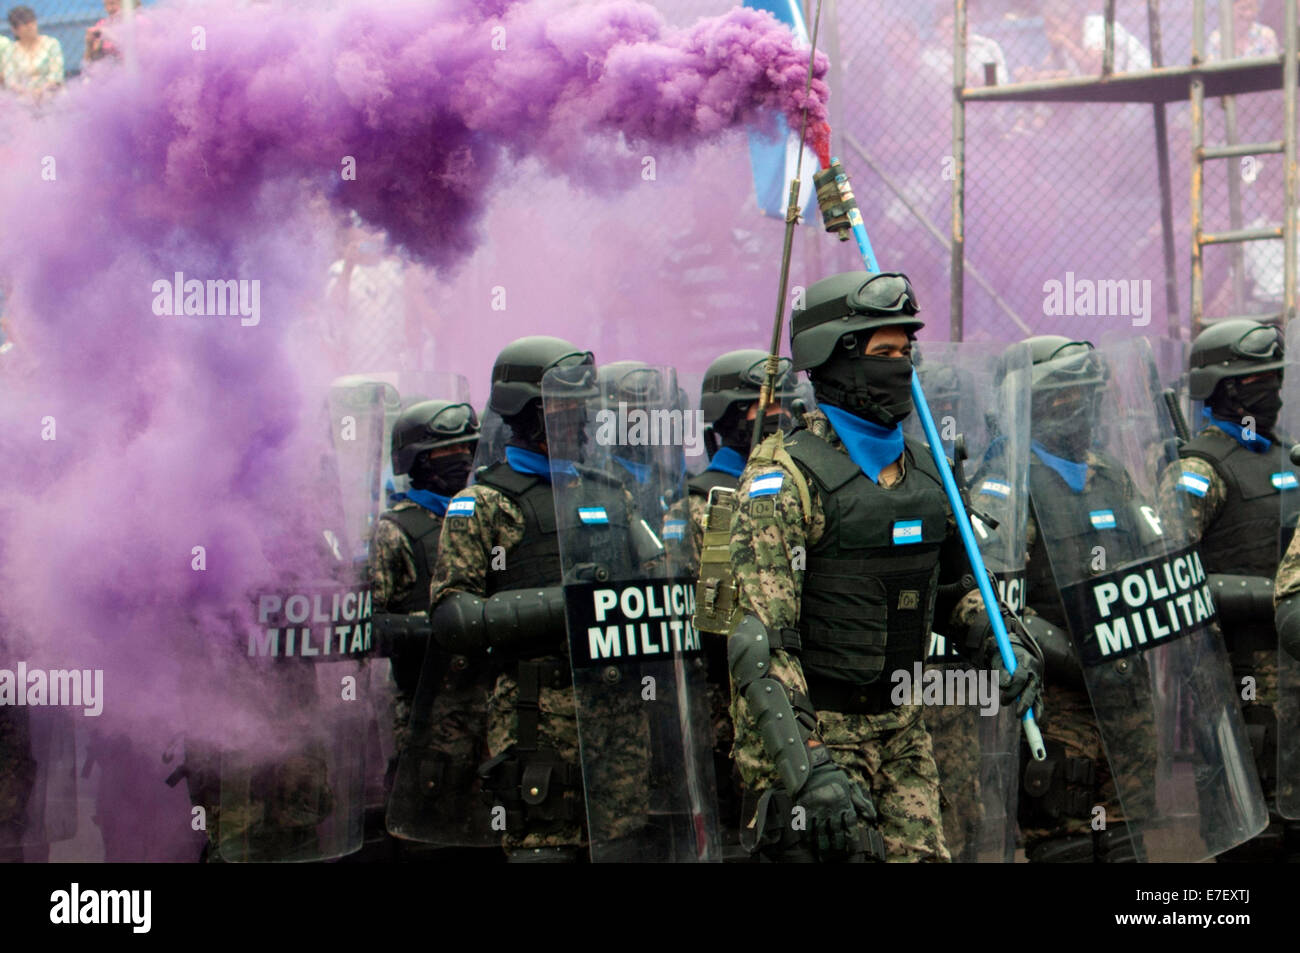 Policia Nacional De Honduras Fotos E Imagenes De Stock Alamy